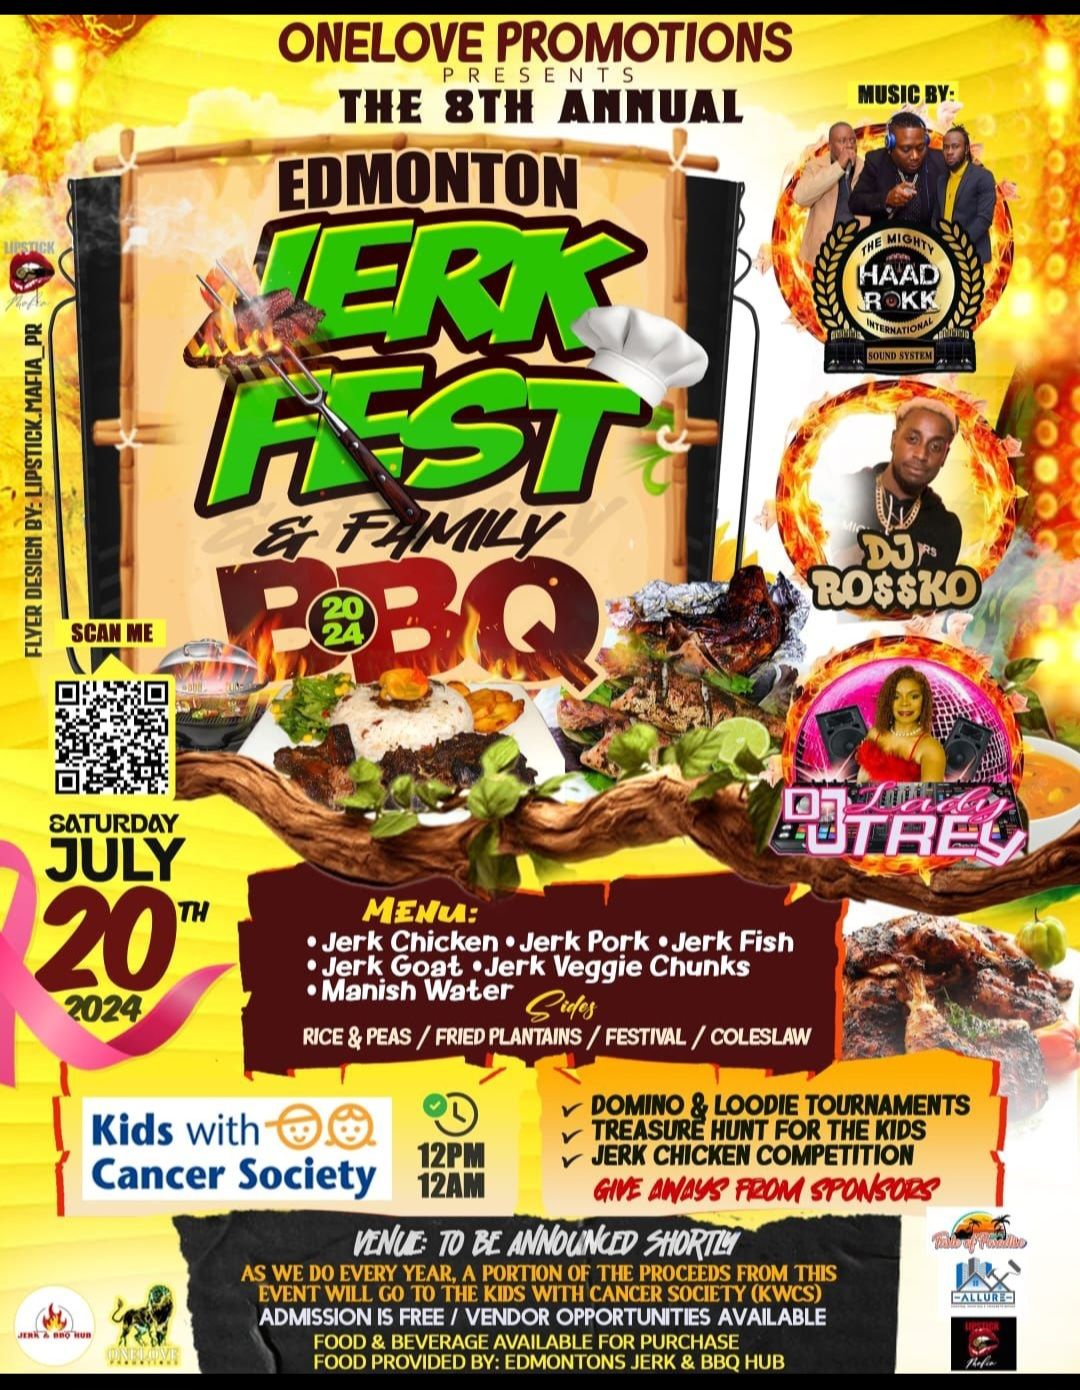 Edmonton Jerk Fest & Family BBQ 